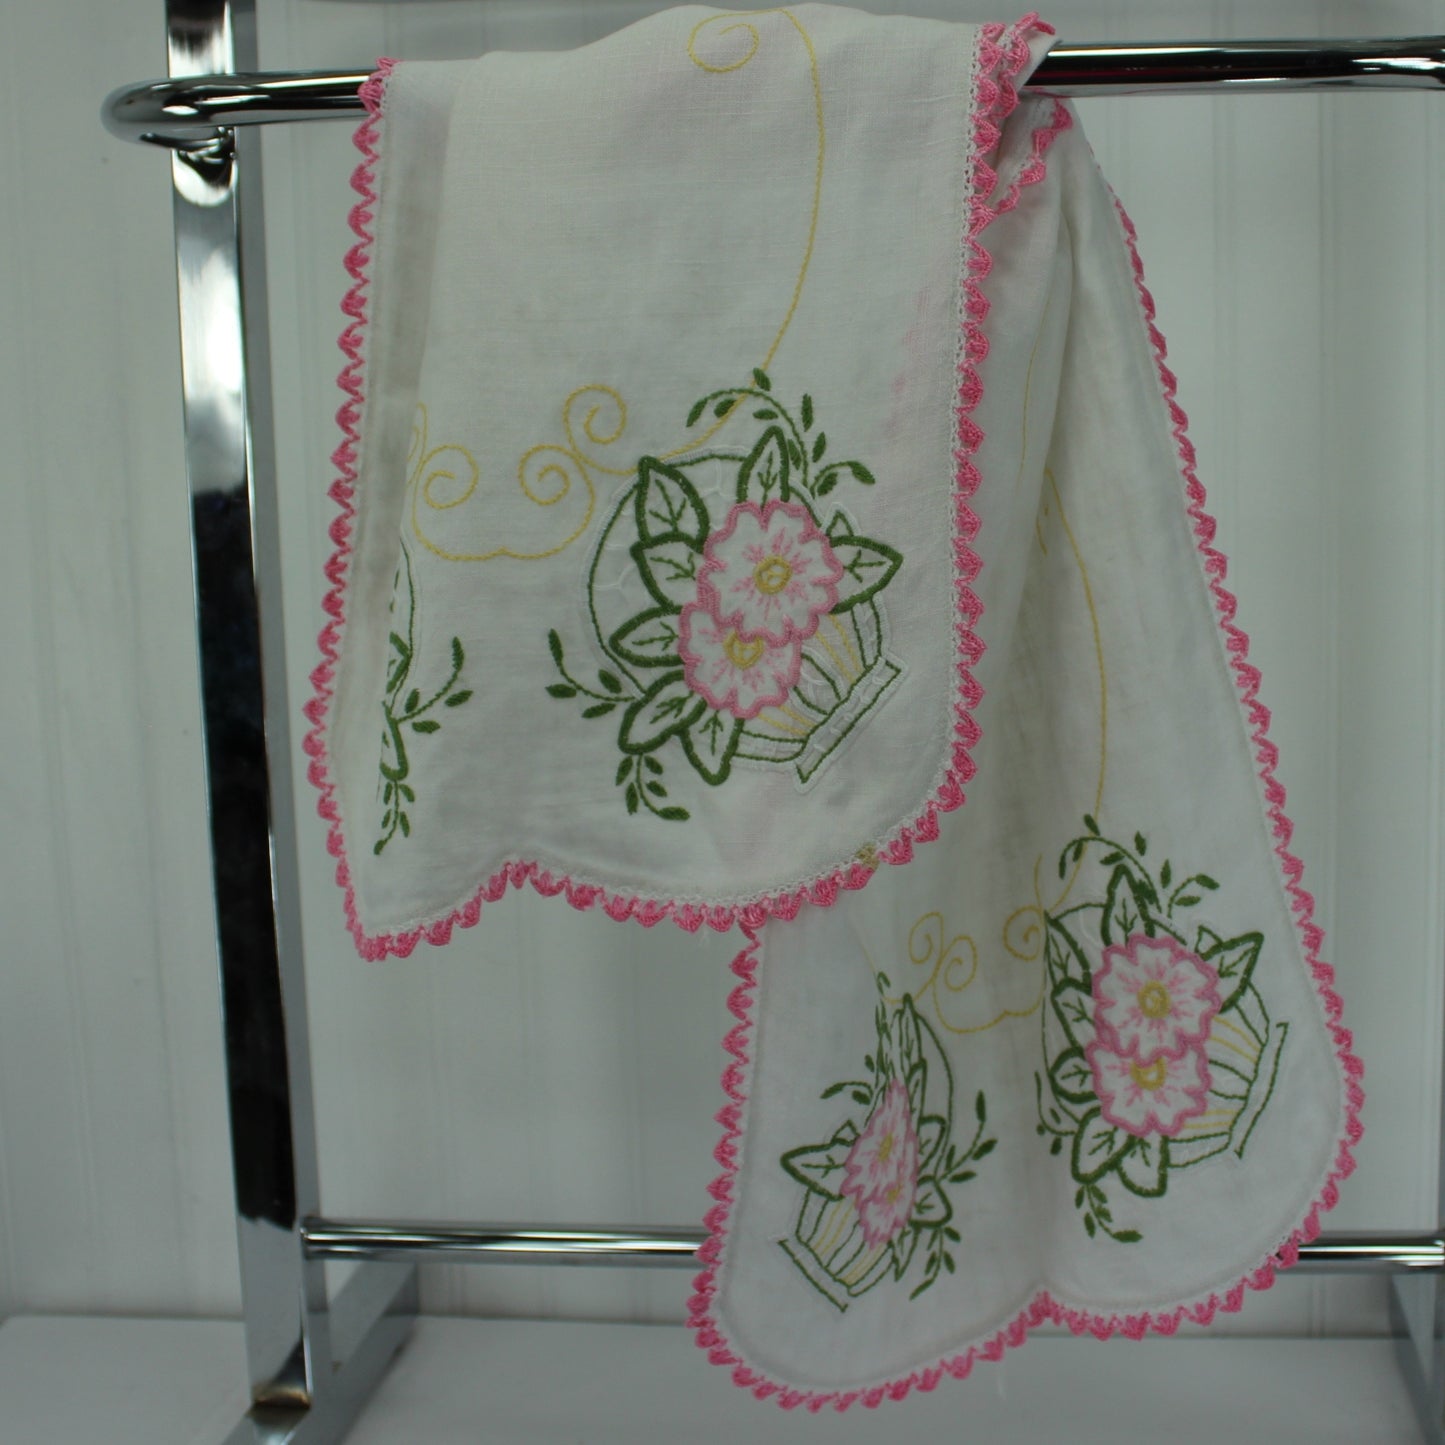 White Linen Table Center Runner Embroidered Flower Baskets Pink Green Crochet Edging design on both ends of runner